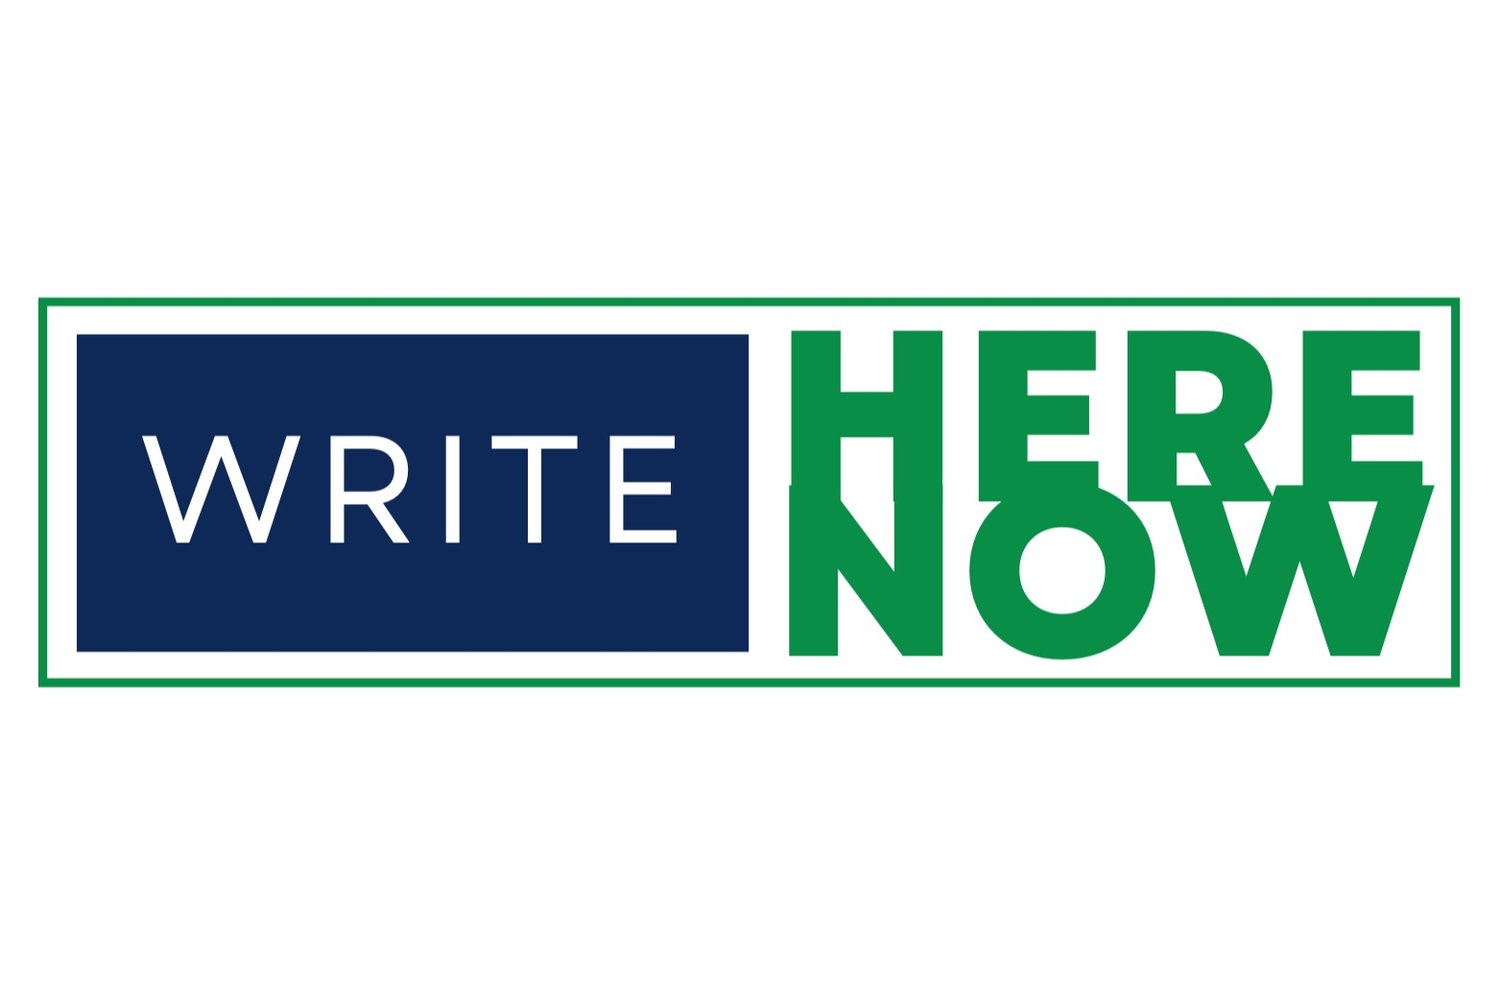 Write Here, Write Now